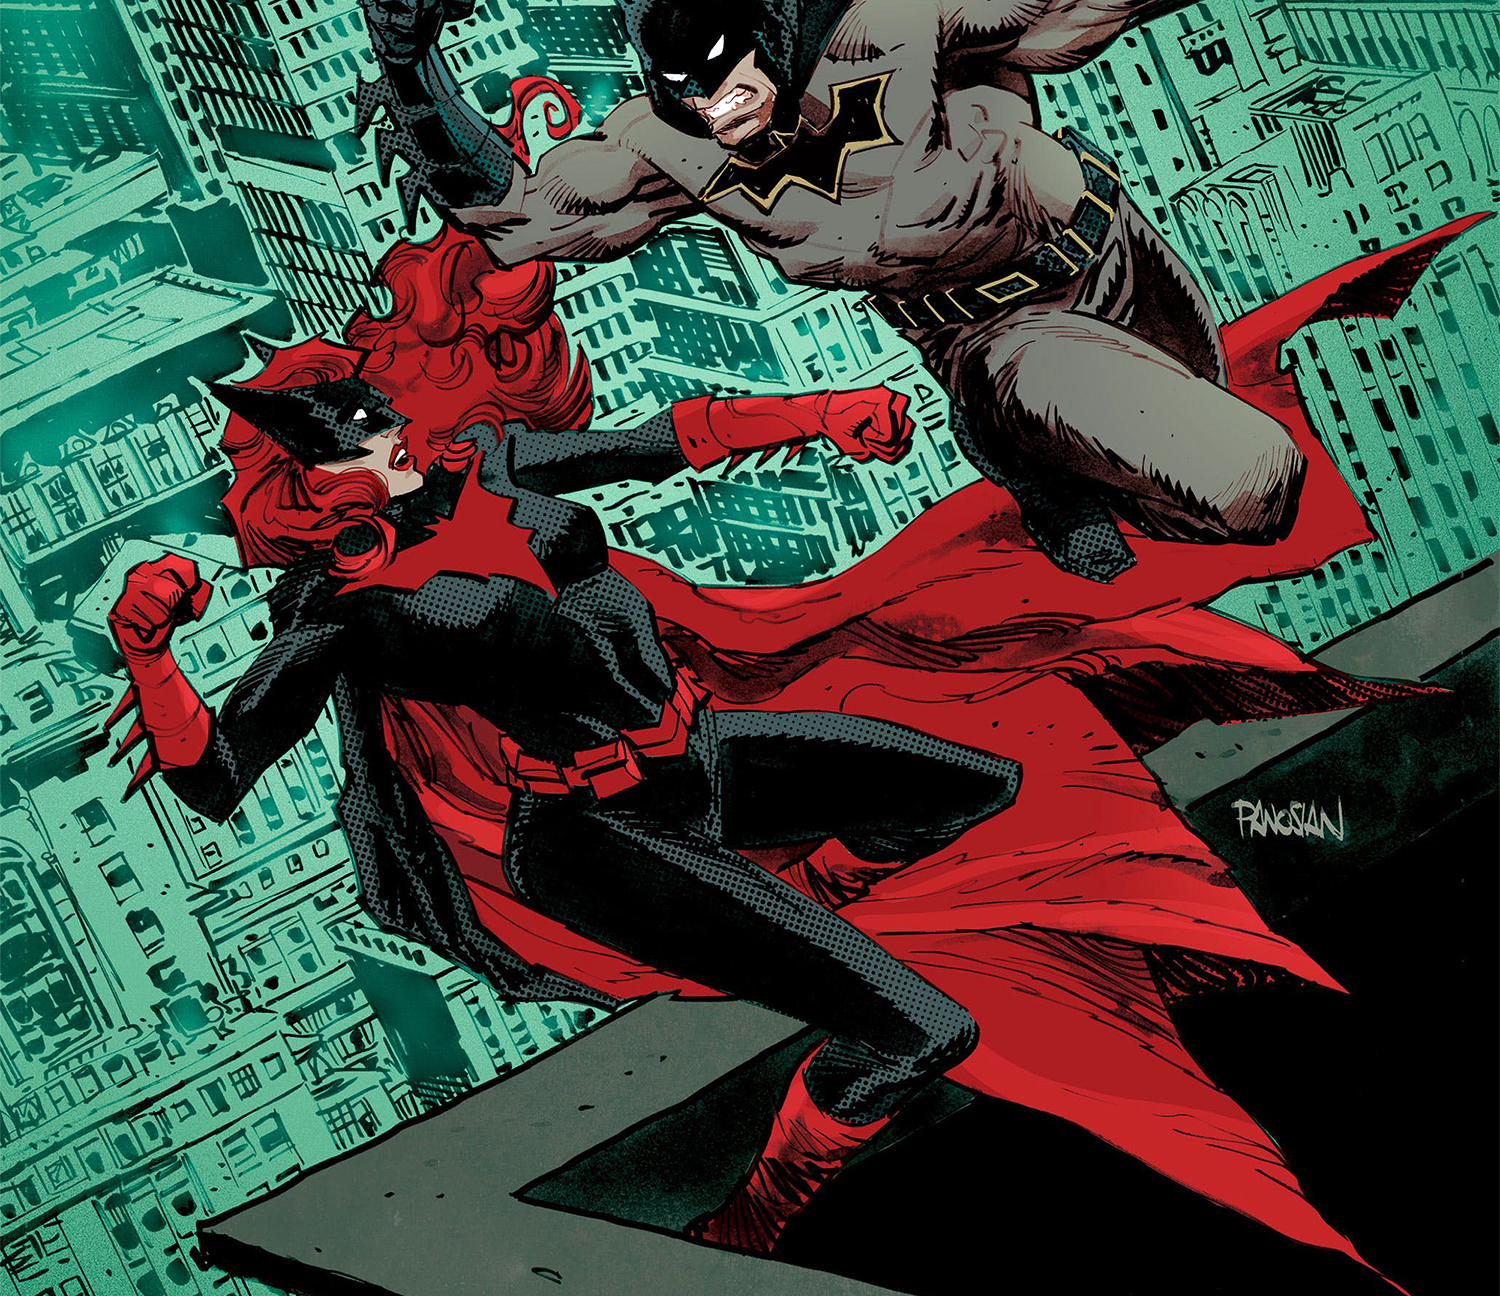 Batwoman #16